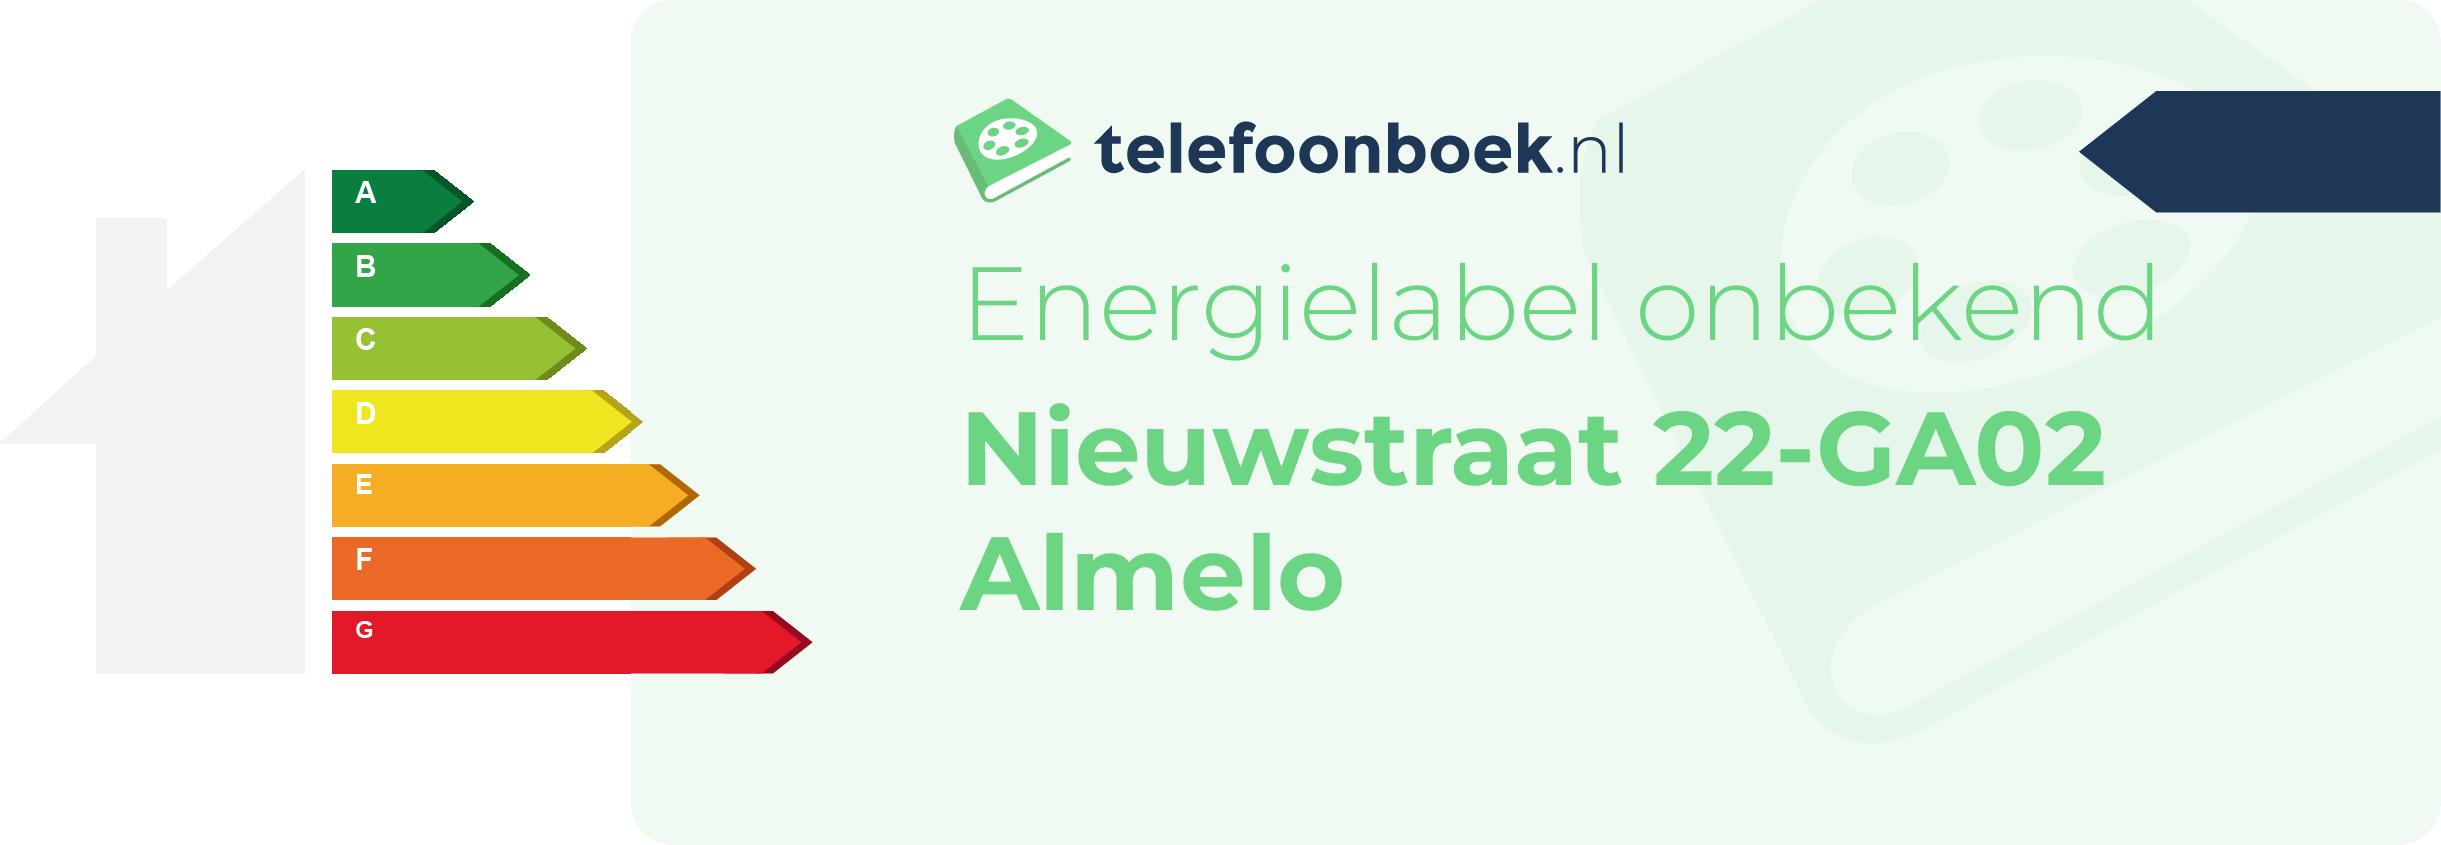 Energielabel Nieuwstraat 22-GA02 Almelo